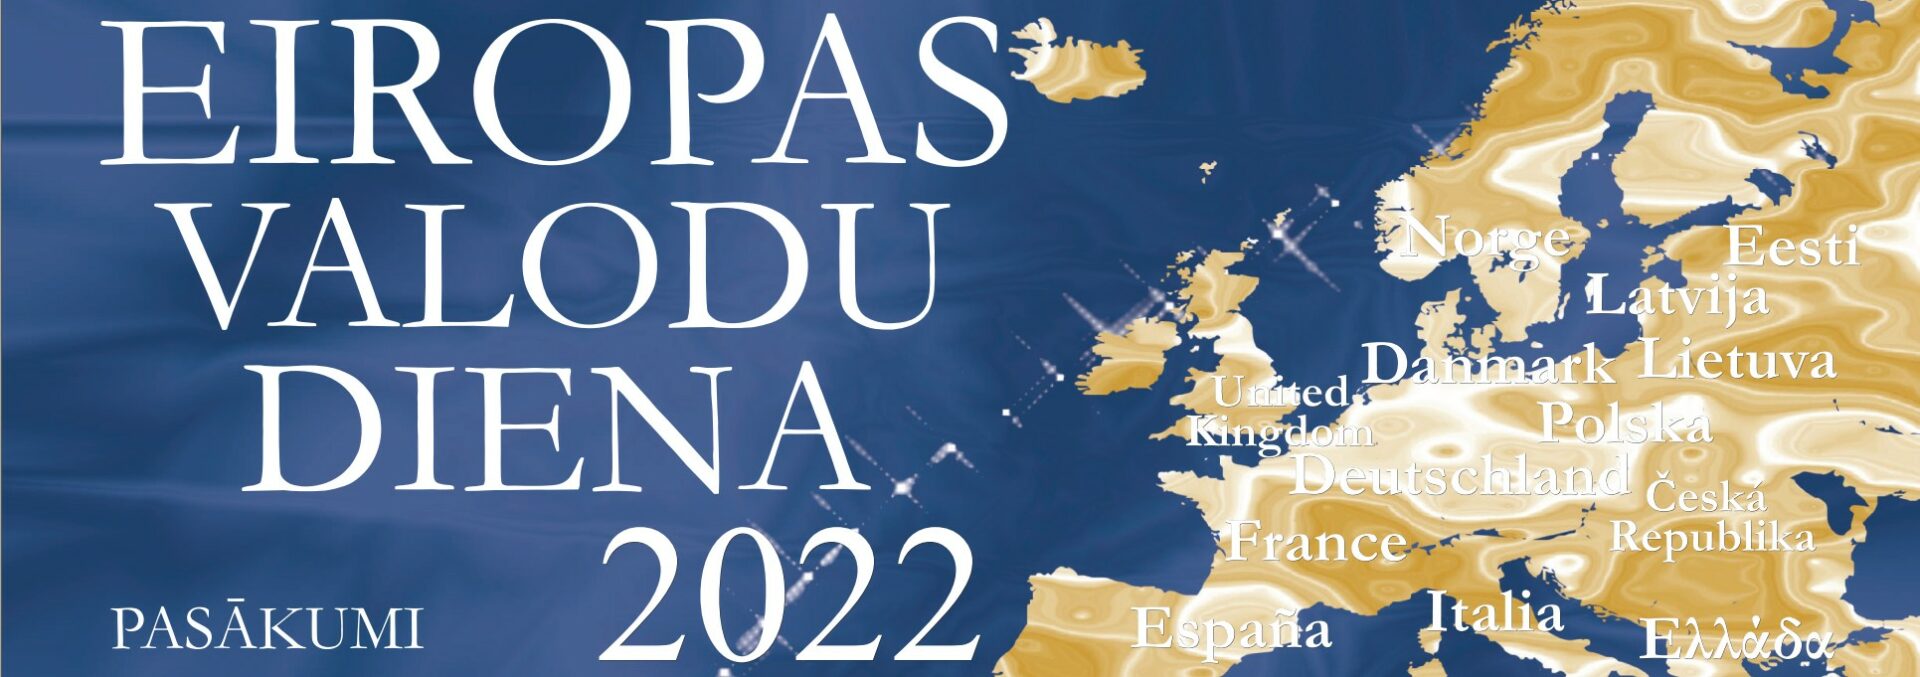 Eiropas Valodu diena 2022